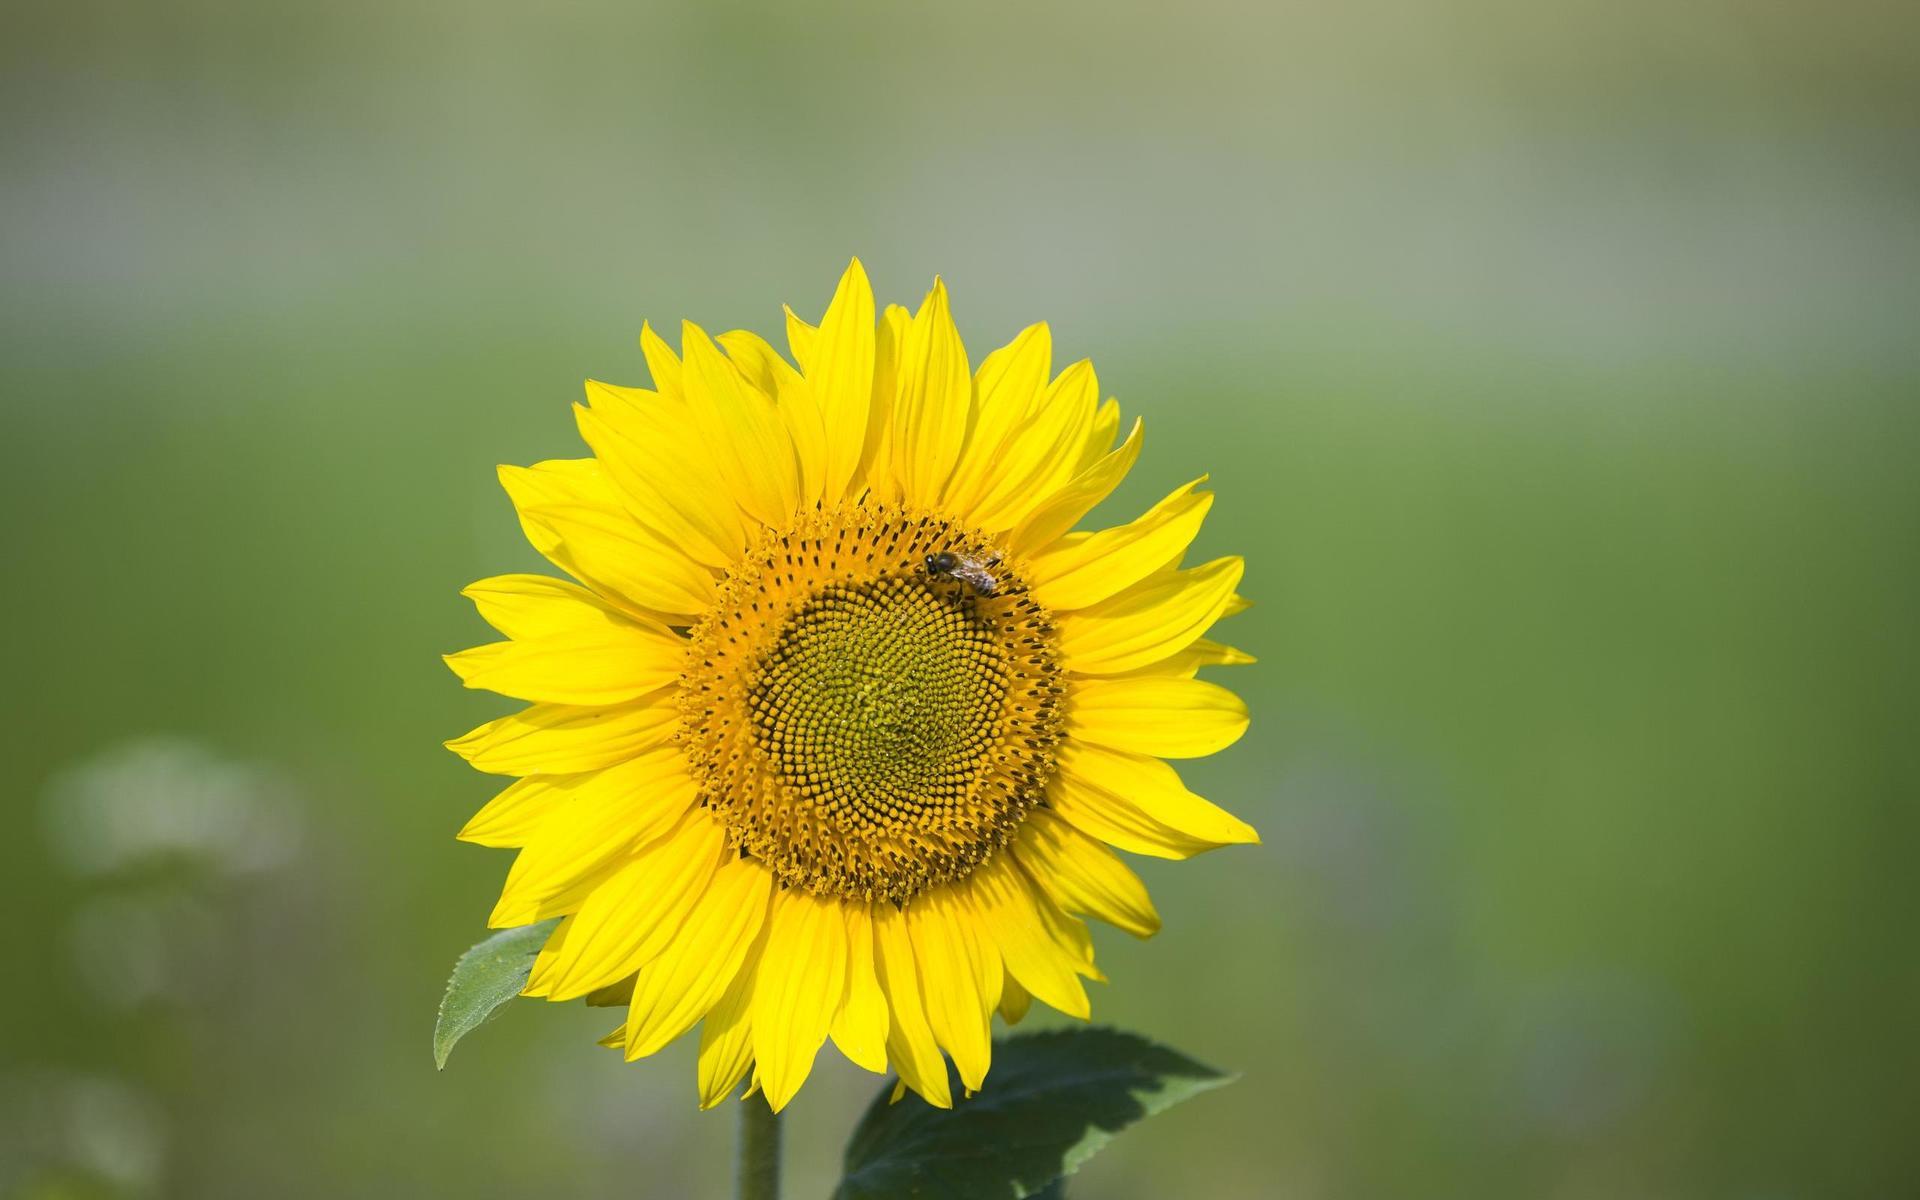 En tredjedel av de vilda bina i Sverige är hotade. Ett sätt att hjälpa dem är att skapa matplatser till dem i form av blomrika miljöer.